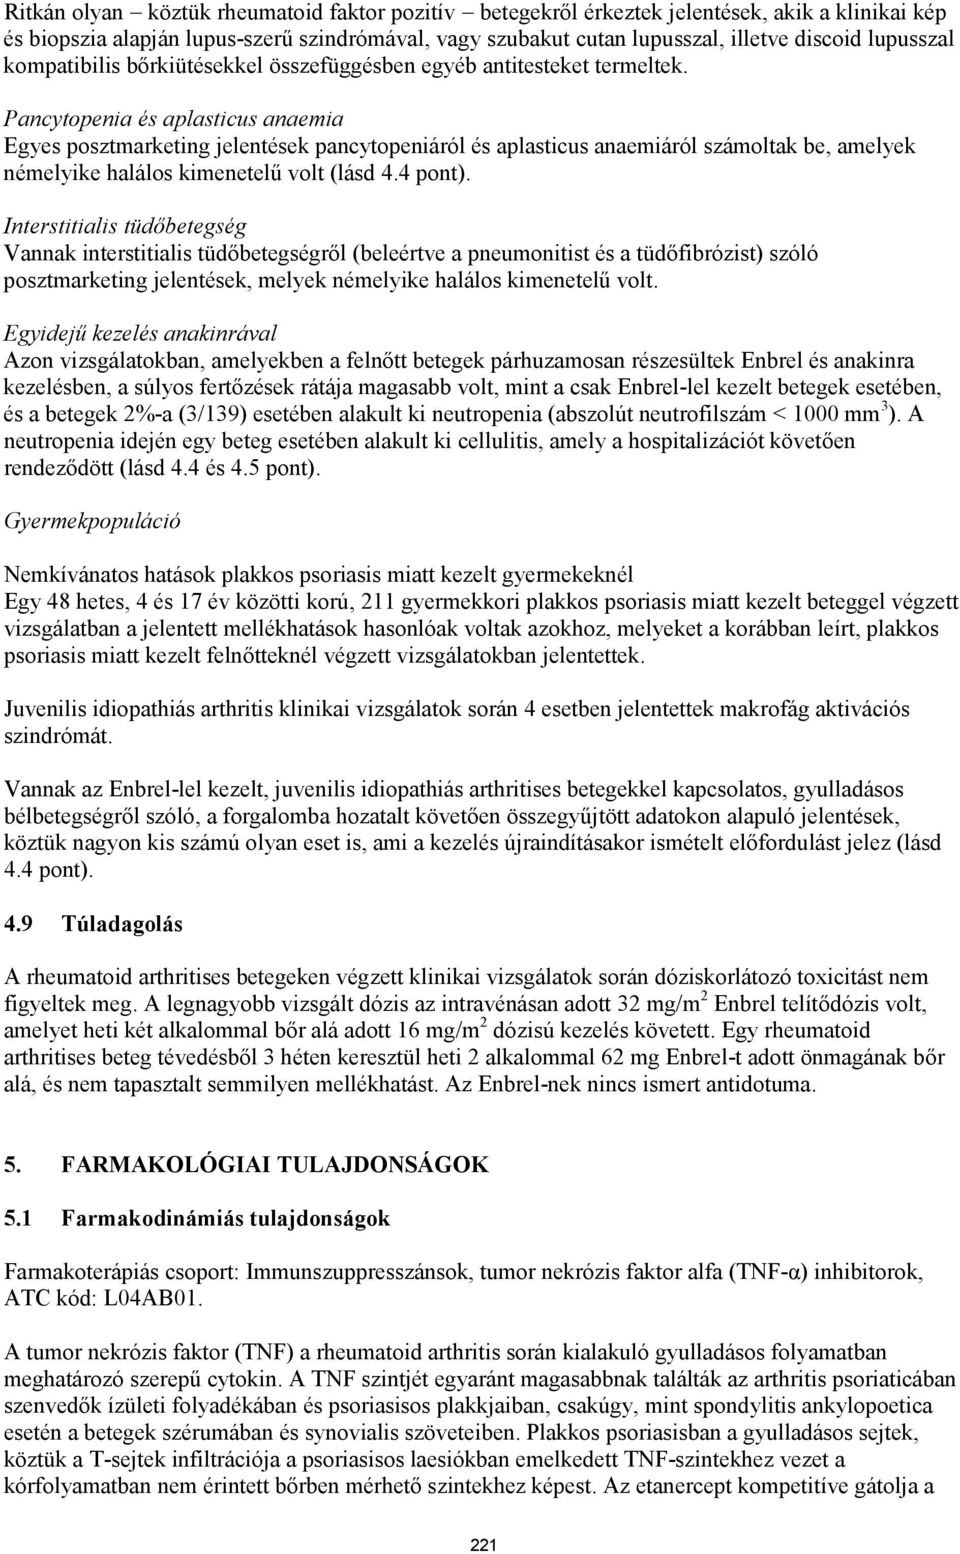 Pancytopenia és aplasticus anaemia Egyes posztmarketing jelentések pancytopeniáról és aplasticus anaemiáról számoltak be, amelyek némelyike halálos kimenetelű volt (lásd 4.4 pont).